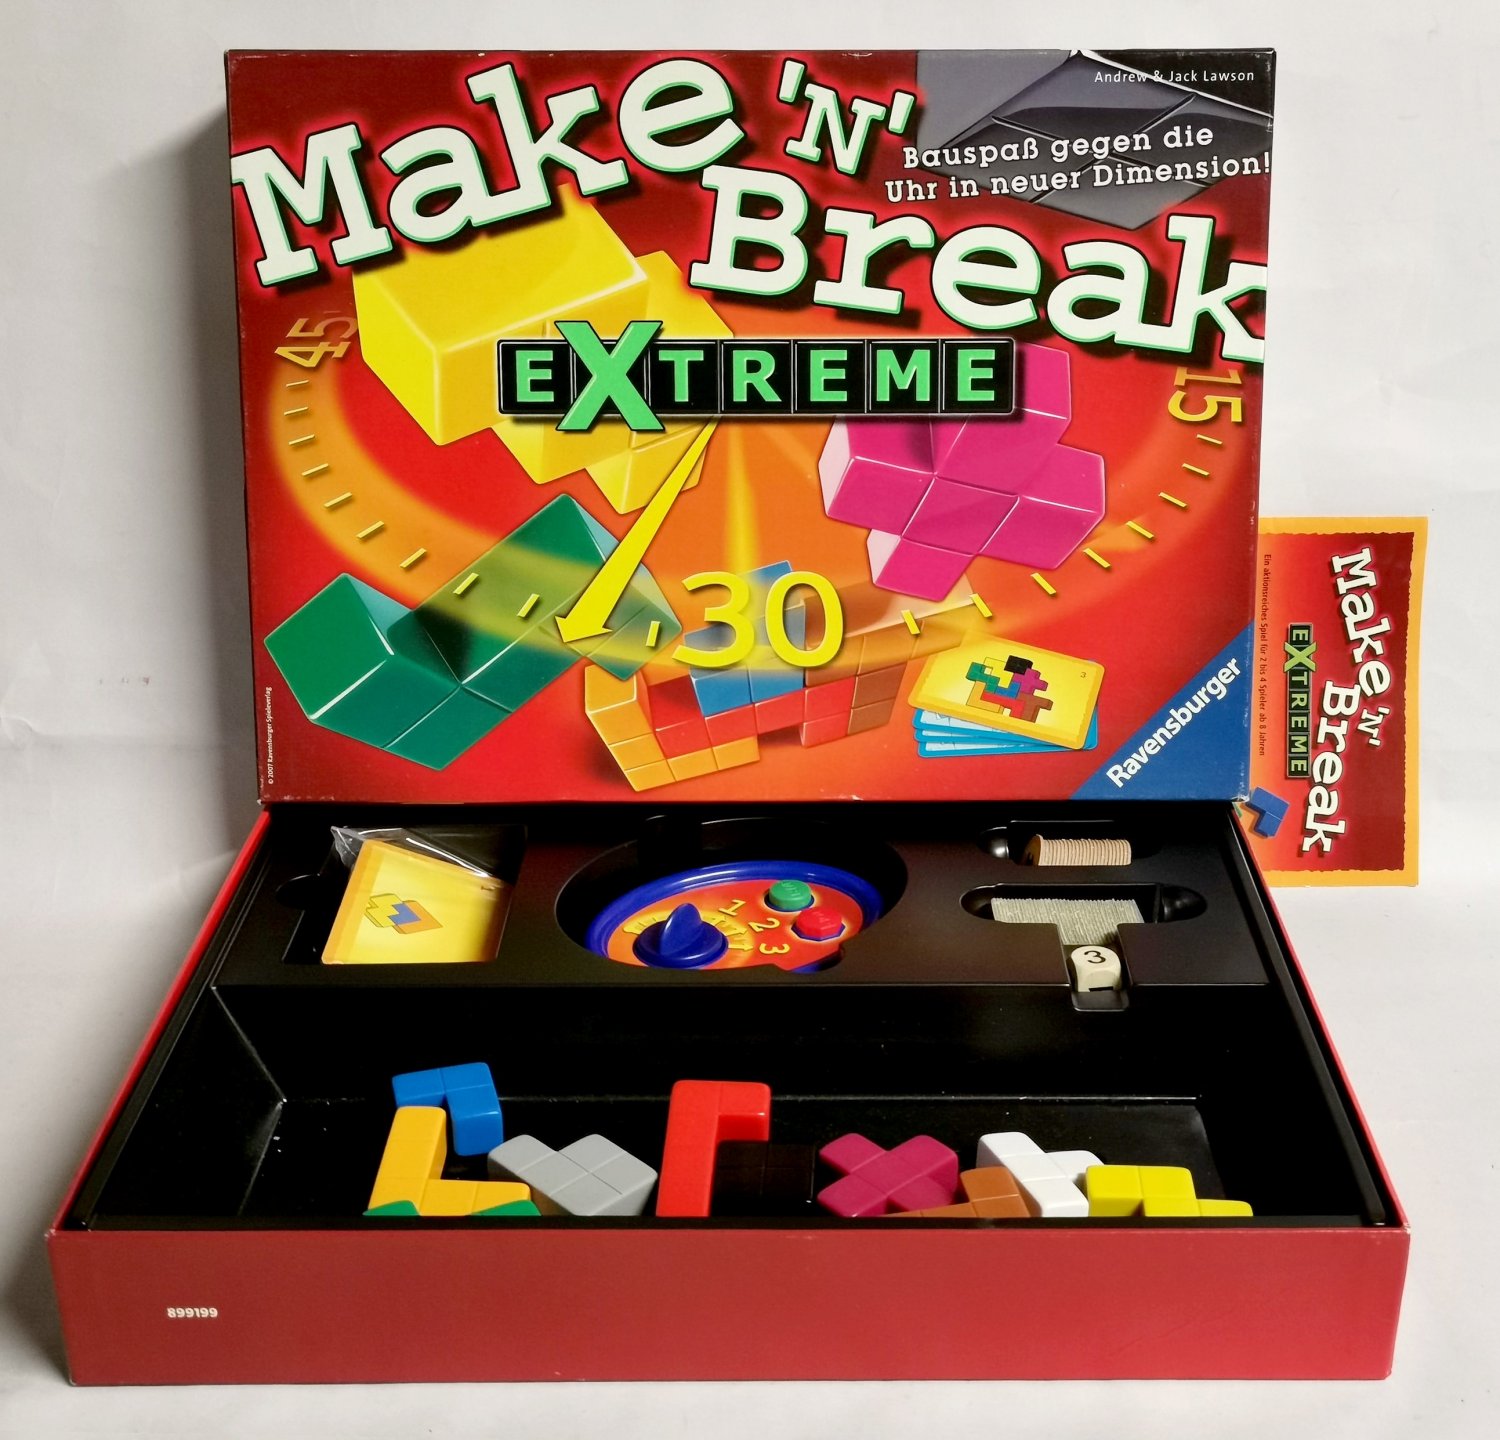 Make \'n\' Break kaufen Extreme 264322 ab Jack – (Andrew 2007 – Ravensburger …“ gebraucht und Spiel 8 A02pfrhw41ZZf Lawson) 